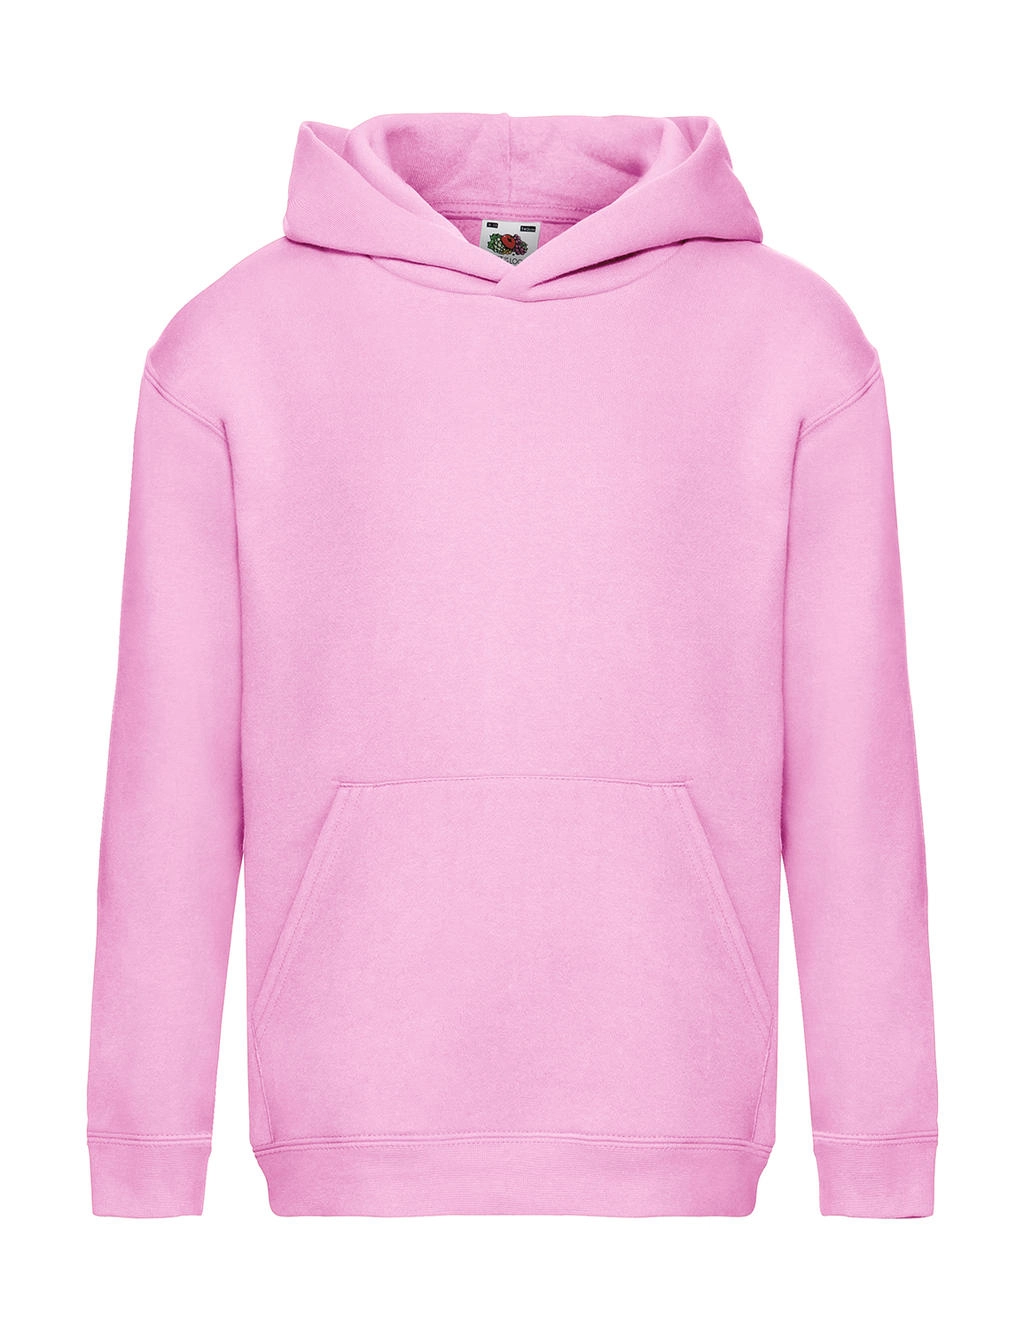 Kids` Premium Hooded Sweat zum Besticken und Bedrucken in der Farbe Light Pink mit Ihren Logo, Schriftzug oder Motiv.